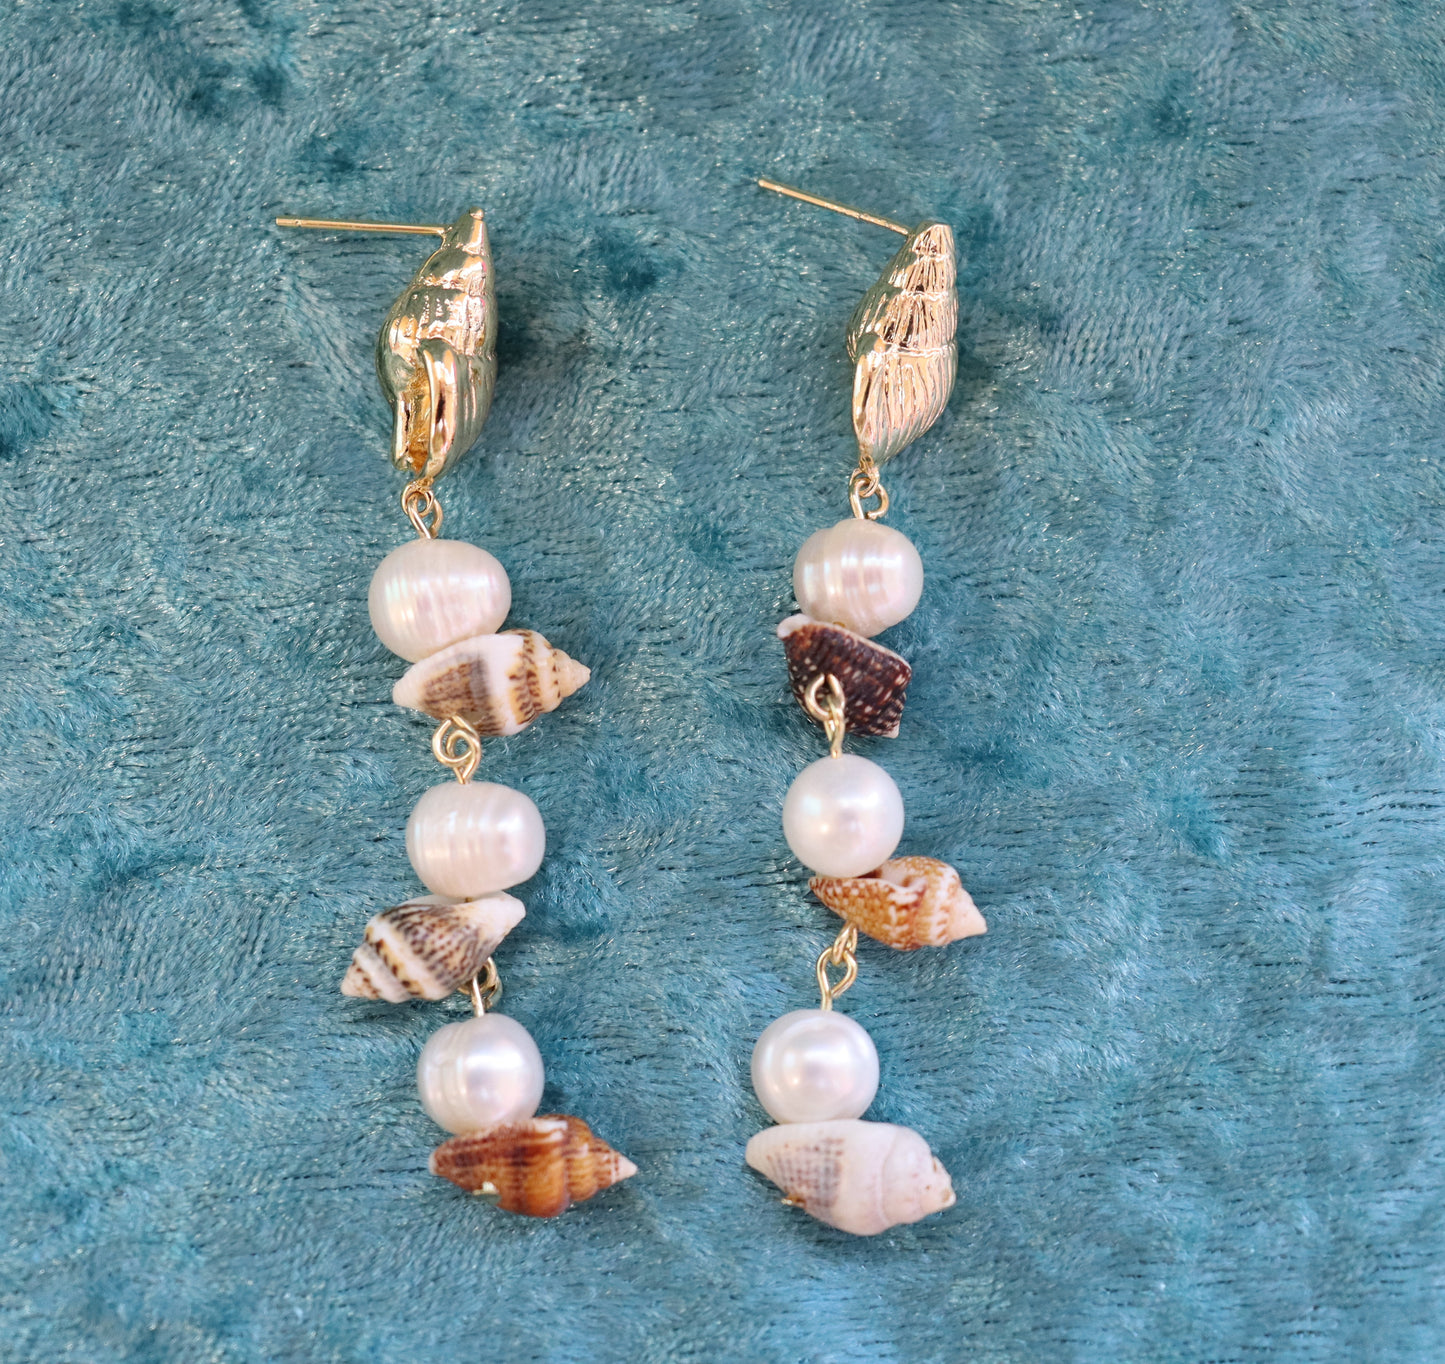 Sally's Seashells by the Sea Shore Earrings